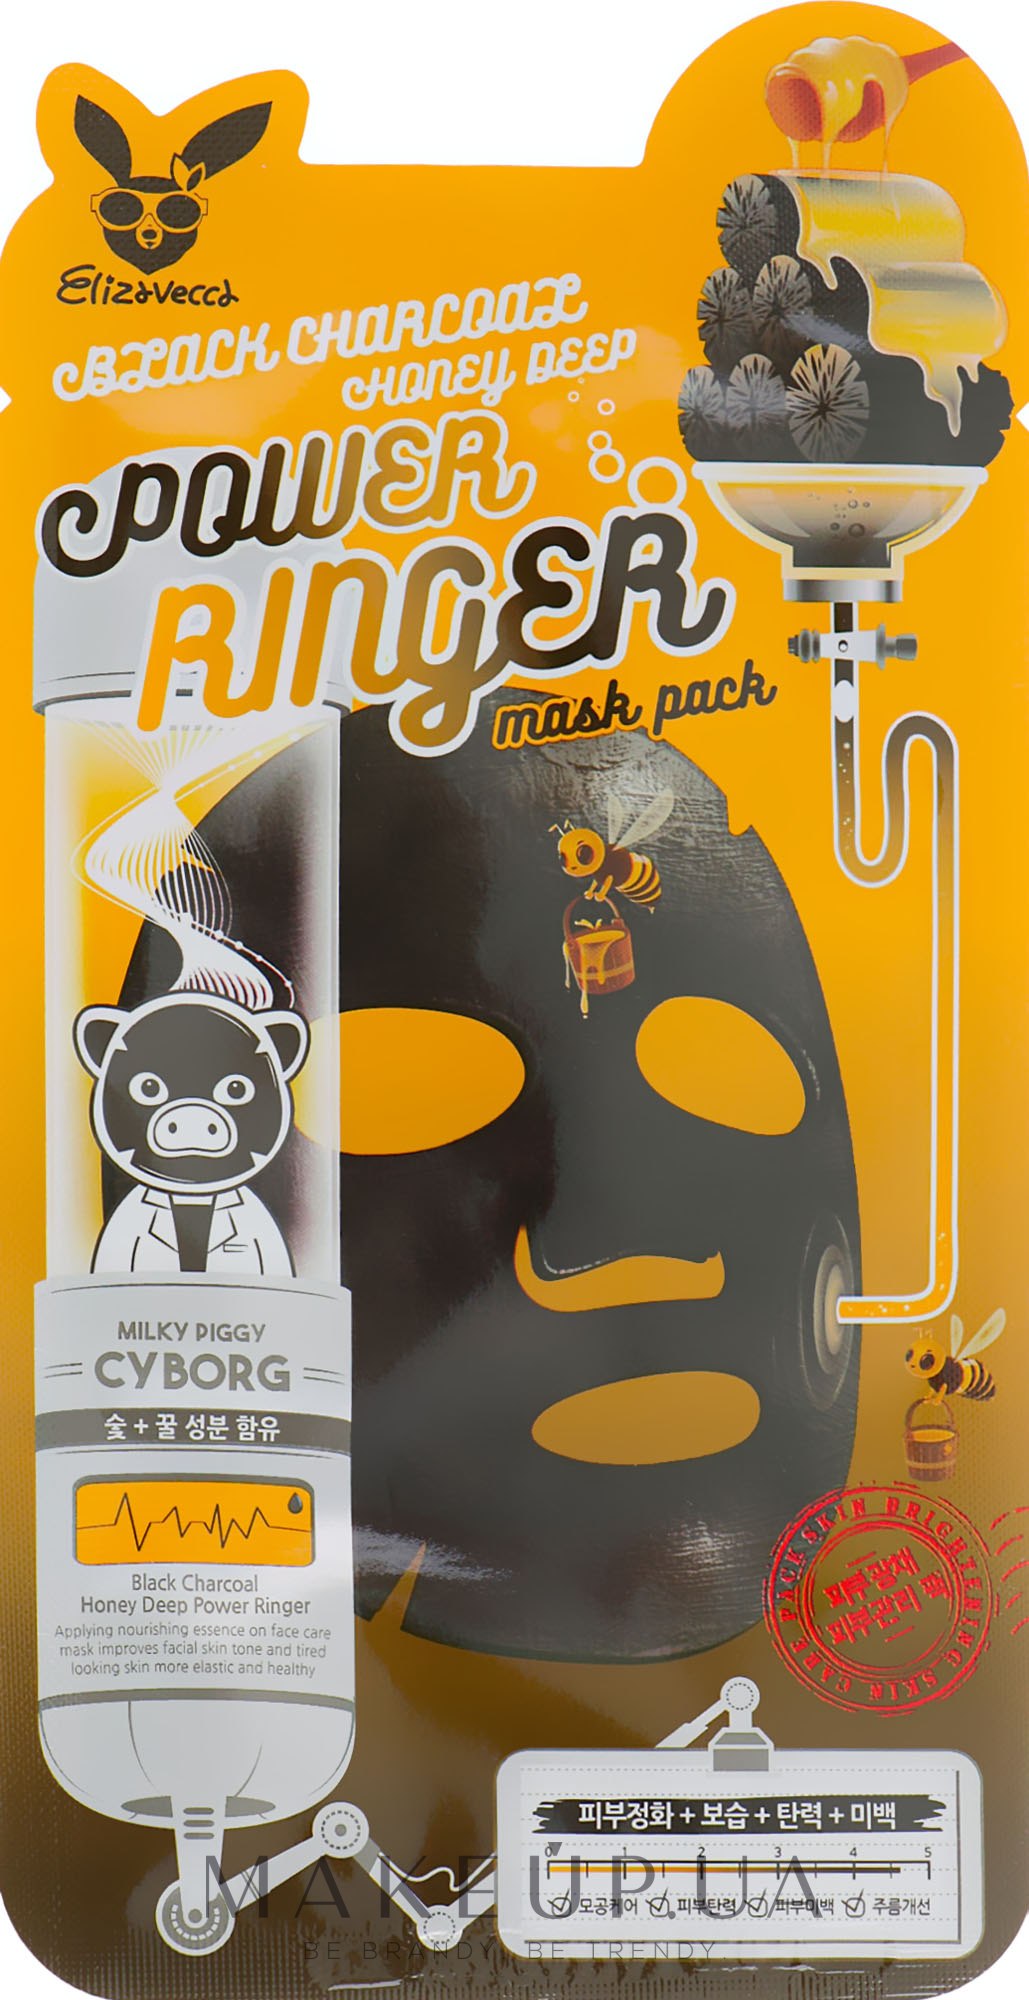 Очищающая питательная маска с древесным углем и медом - Elizavecca Black Charcoal Honey Deep Power Ringer Mask Pack — фото 23ml